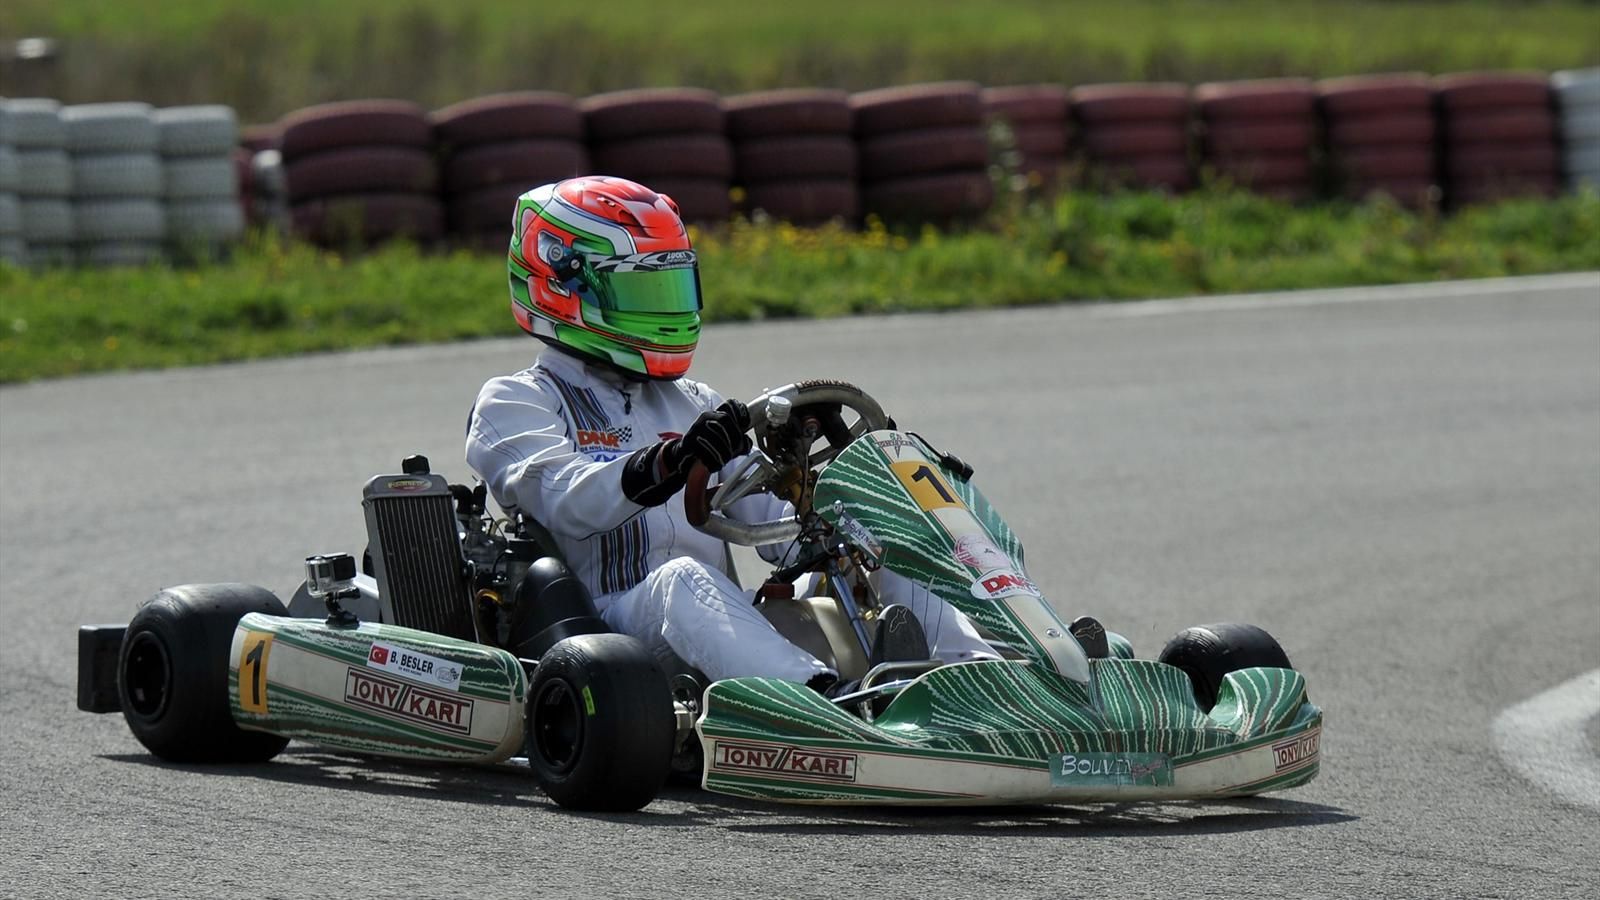 Karting CIK FIA Orta Doğu Avrupa Bölgesi Şampiyonası 4.yarışı Çek Cumhuriyeti’nde